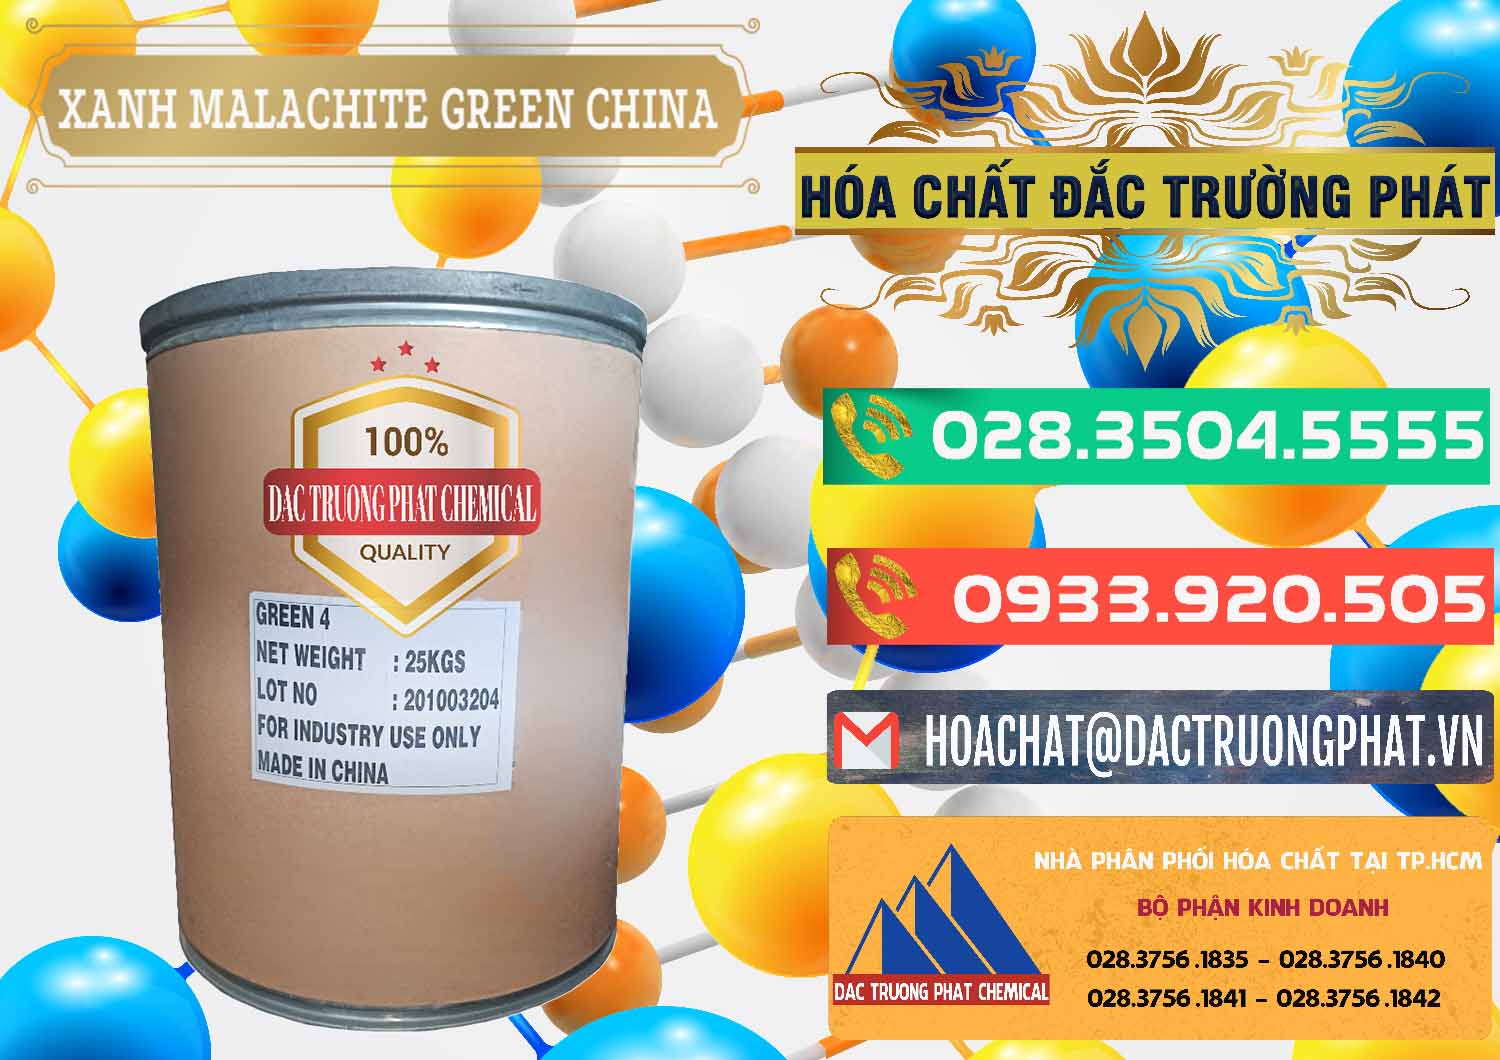 Nơi chuyên kinh doanh & bán Xanh Malachite Green Trung Quốc China - 0325 - Đơn vị chuyên kinh doanh và phân phối hóa chất tại TP.HCM - congtyhoachat.com.vn